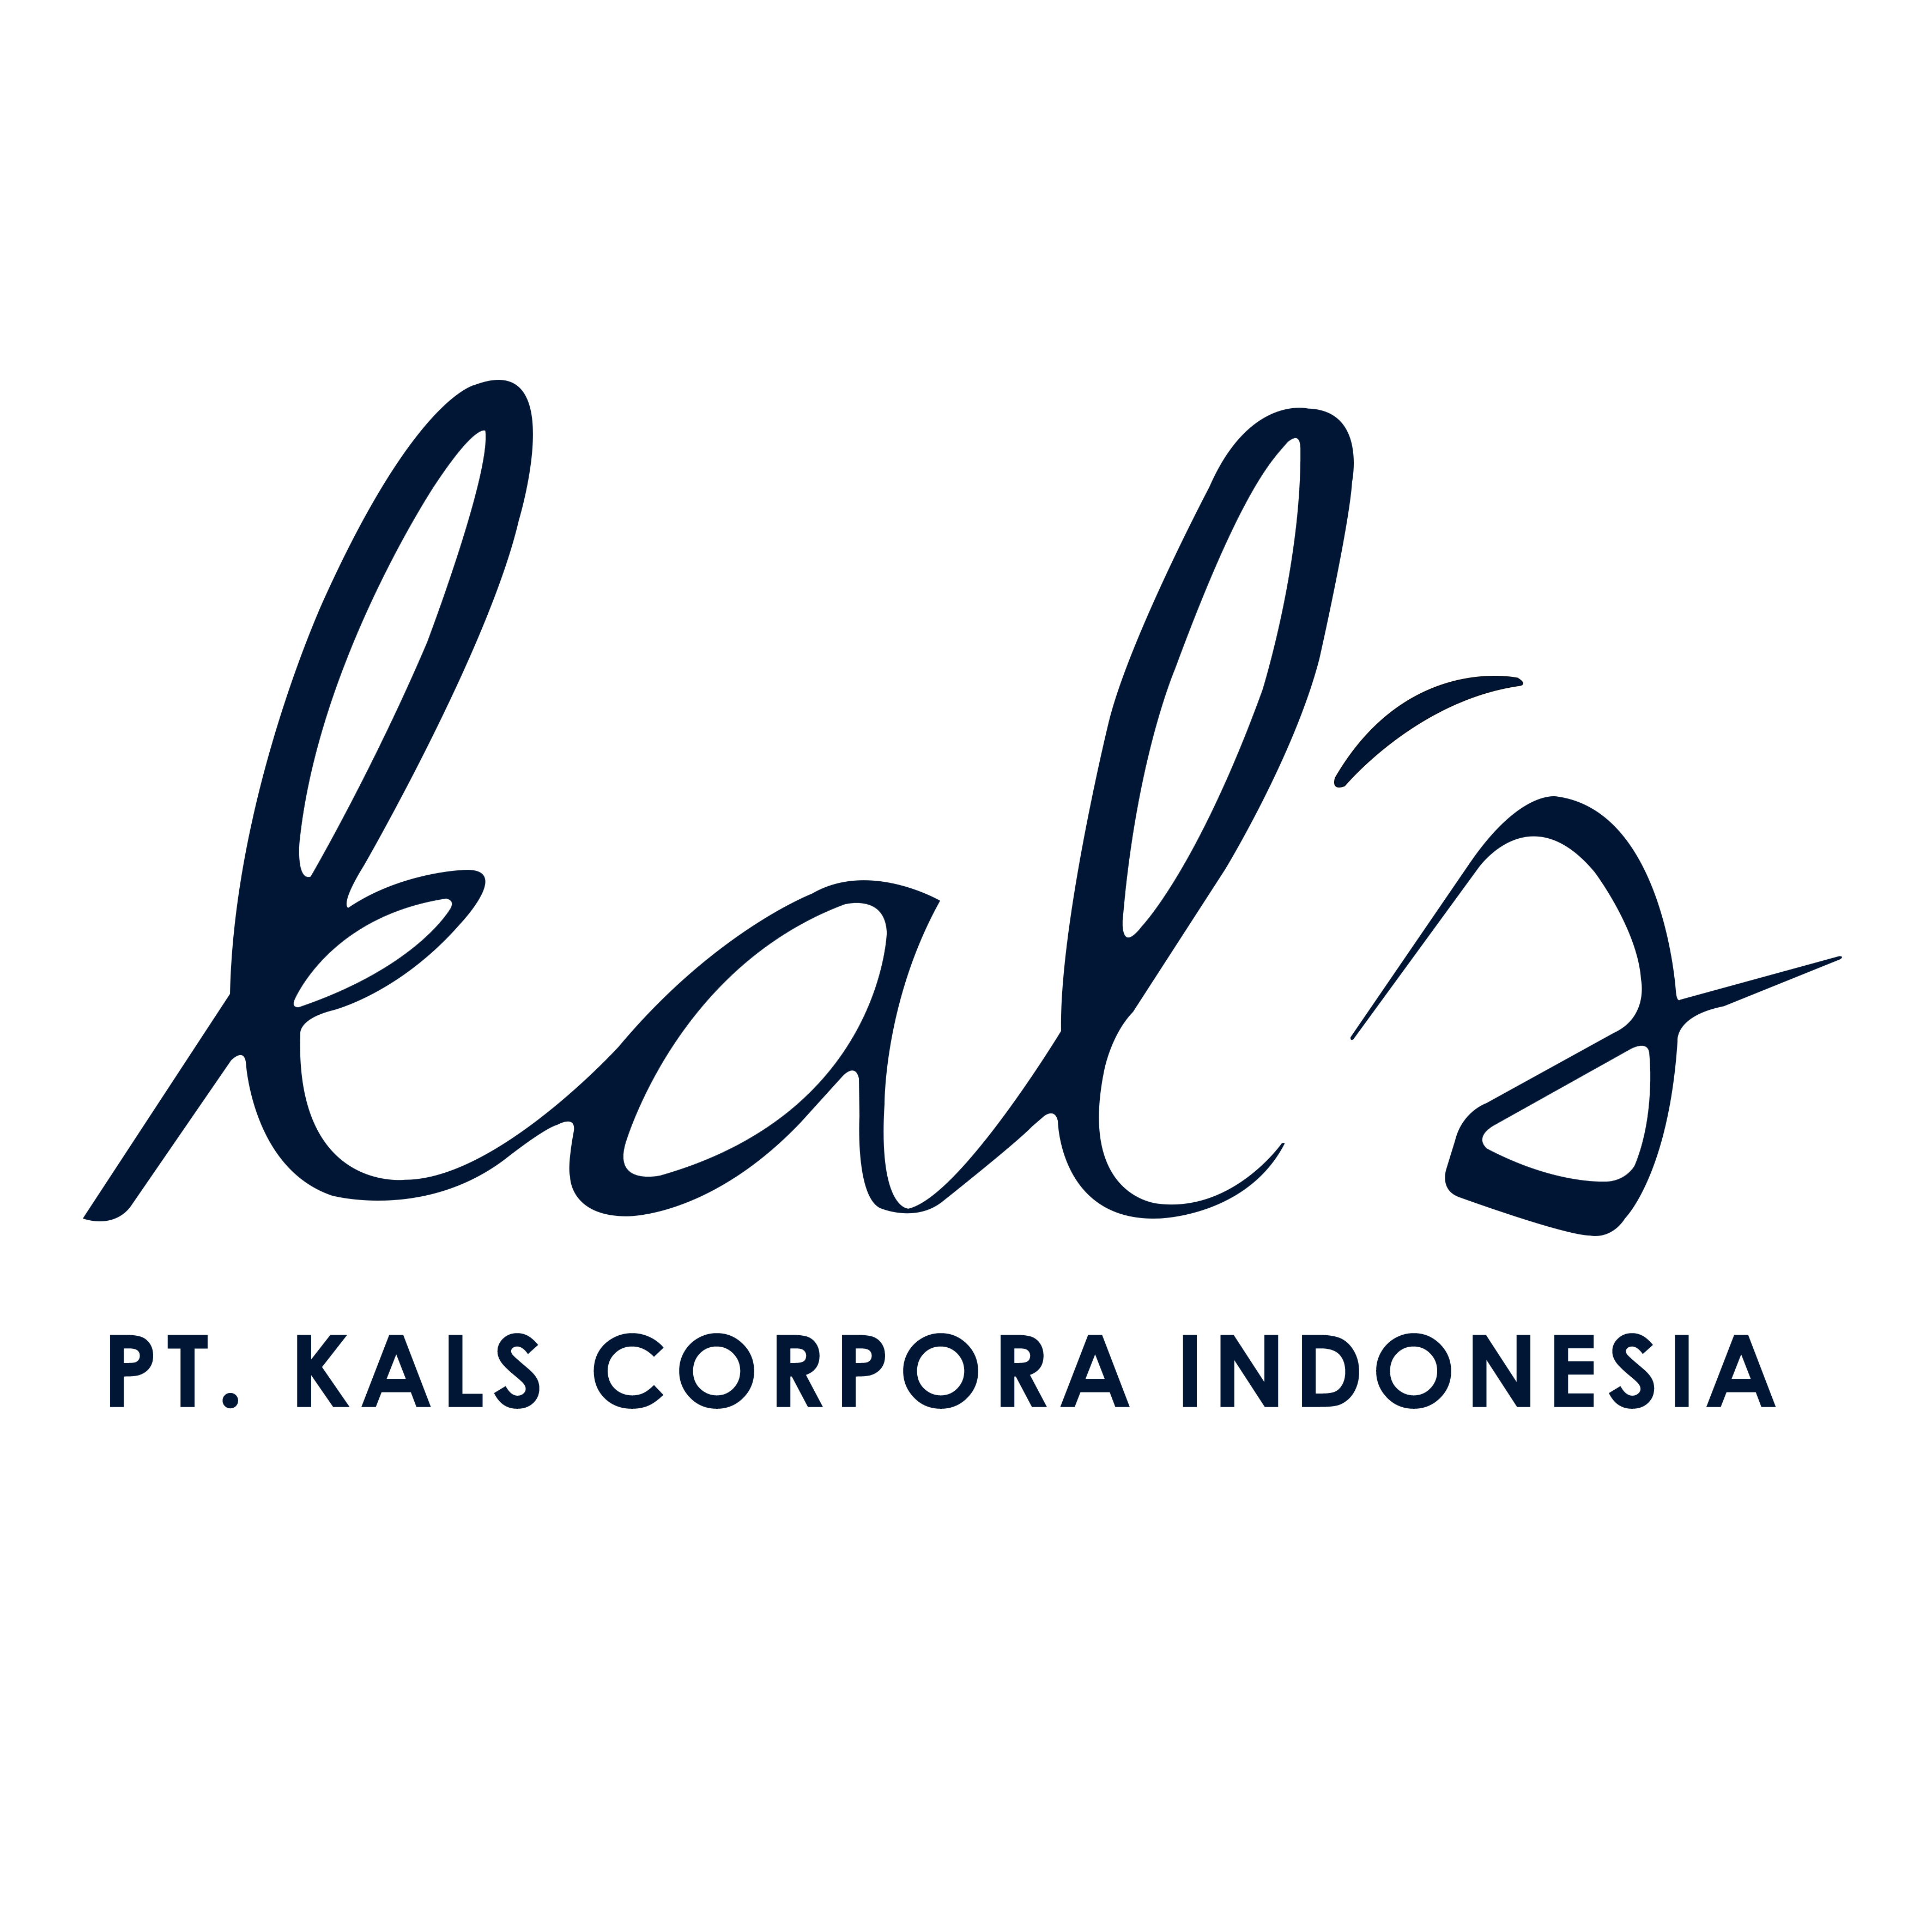 Pt Kals Corpora Indonesia